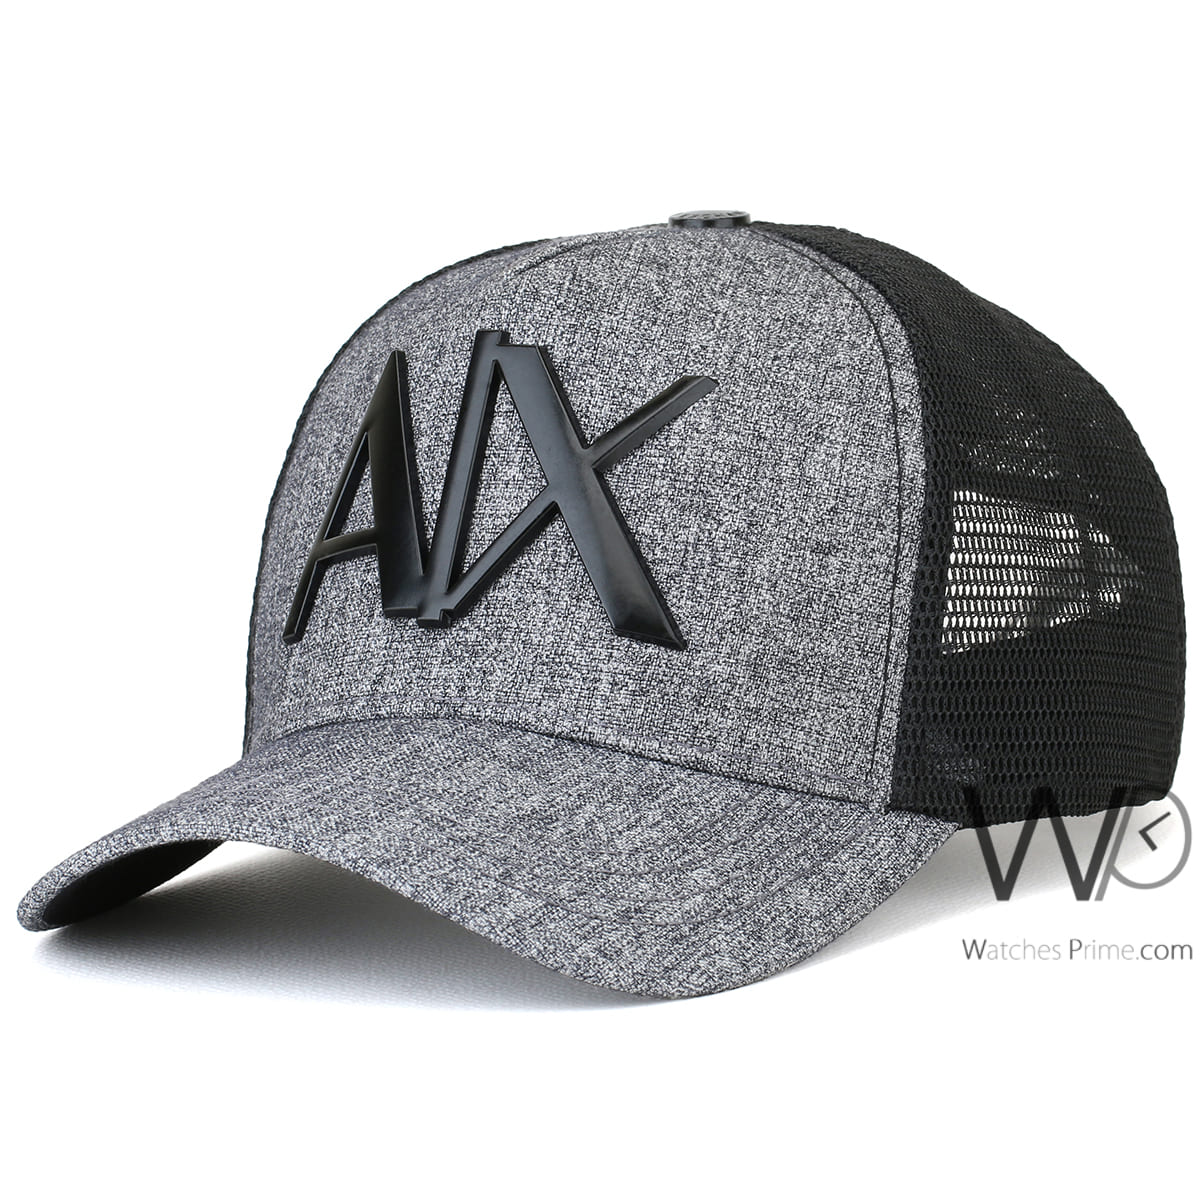 armani-exchange-trucker-cap-grey-mesh-ax-hat